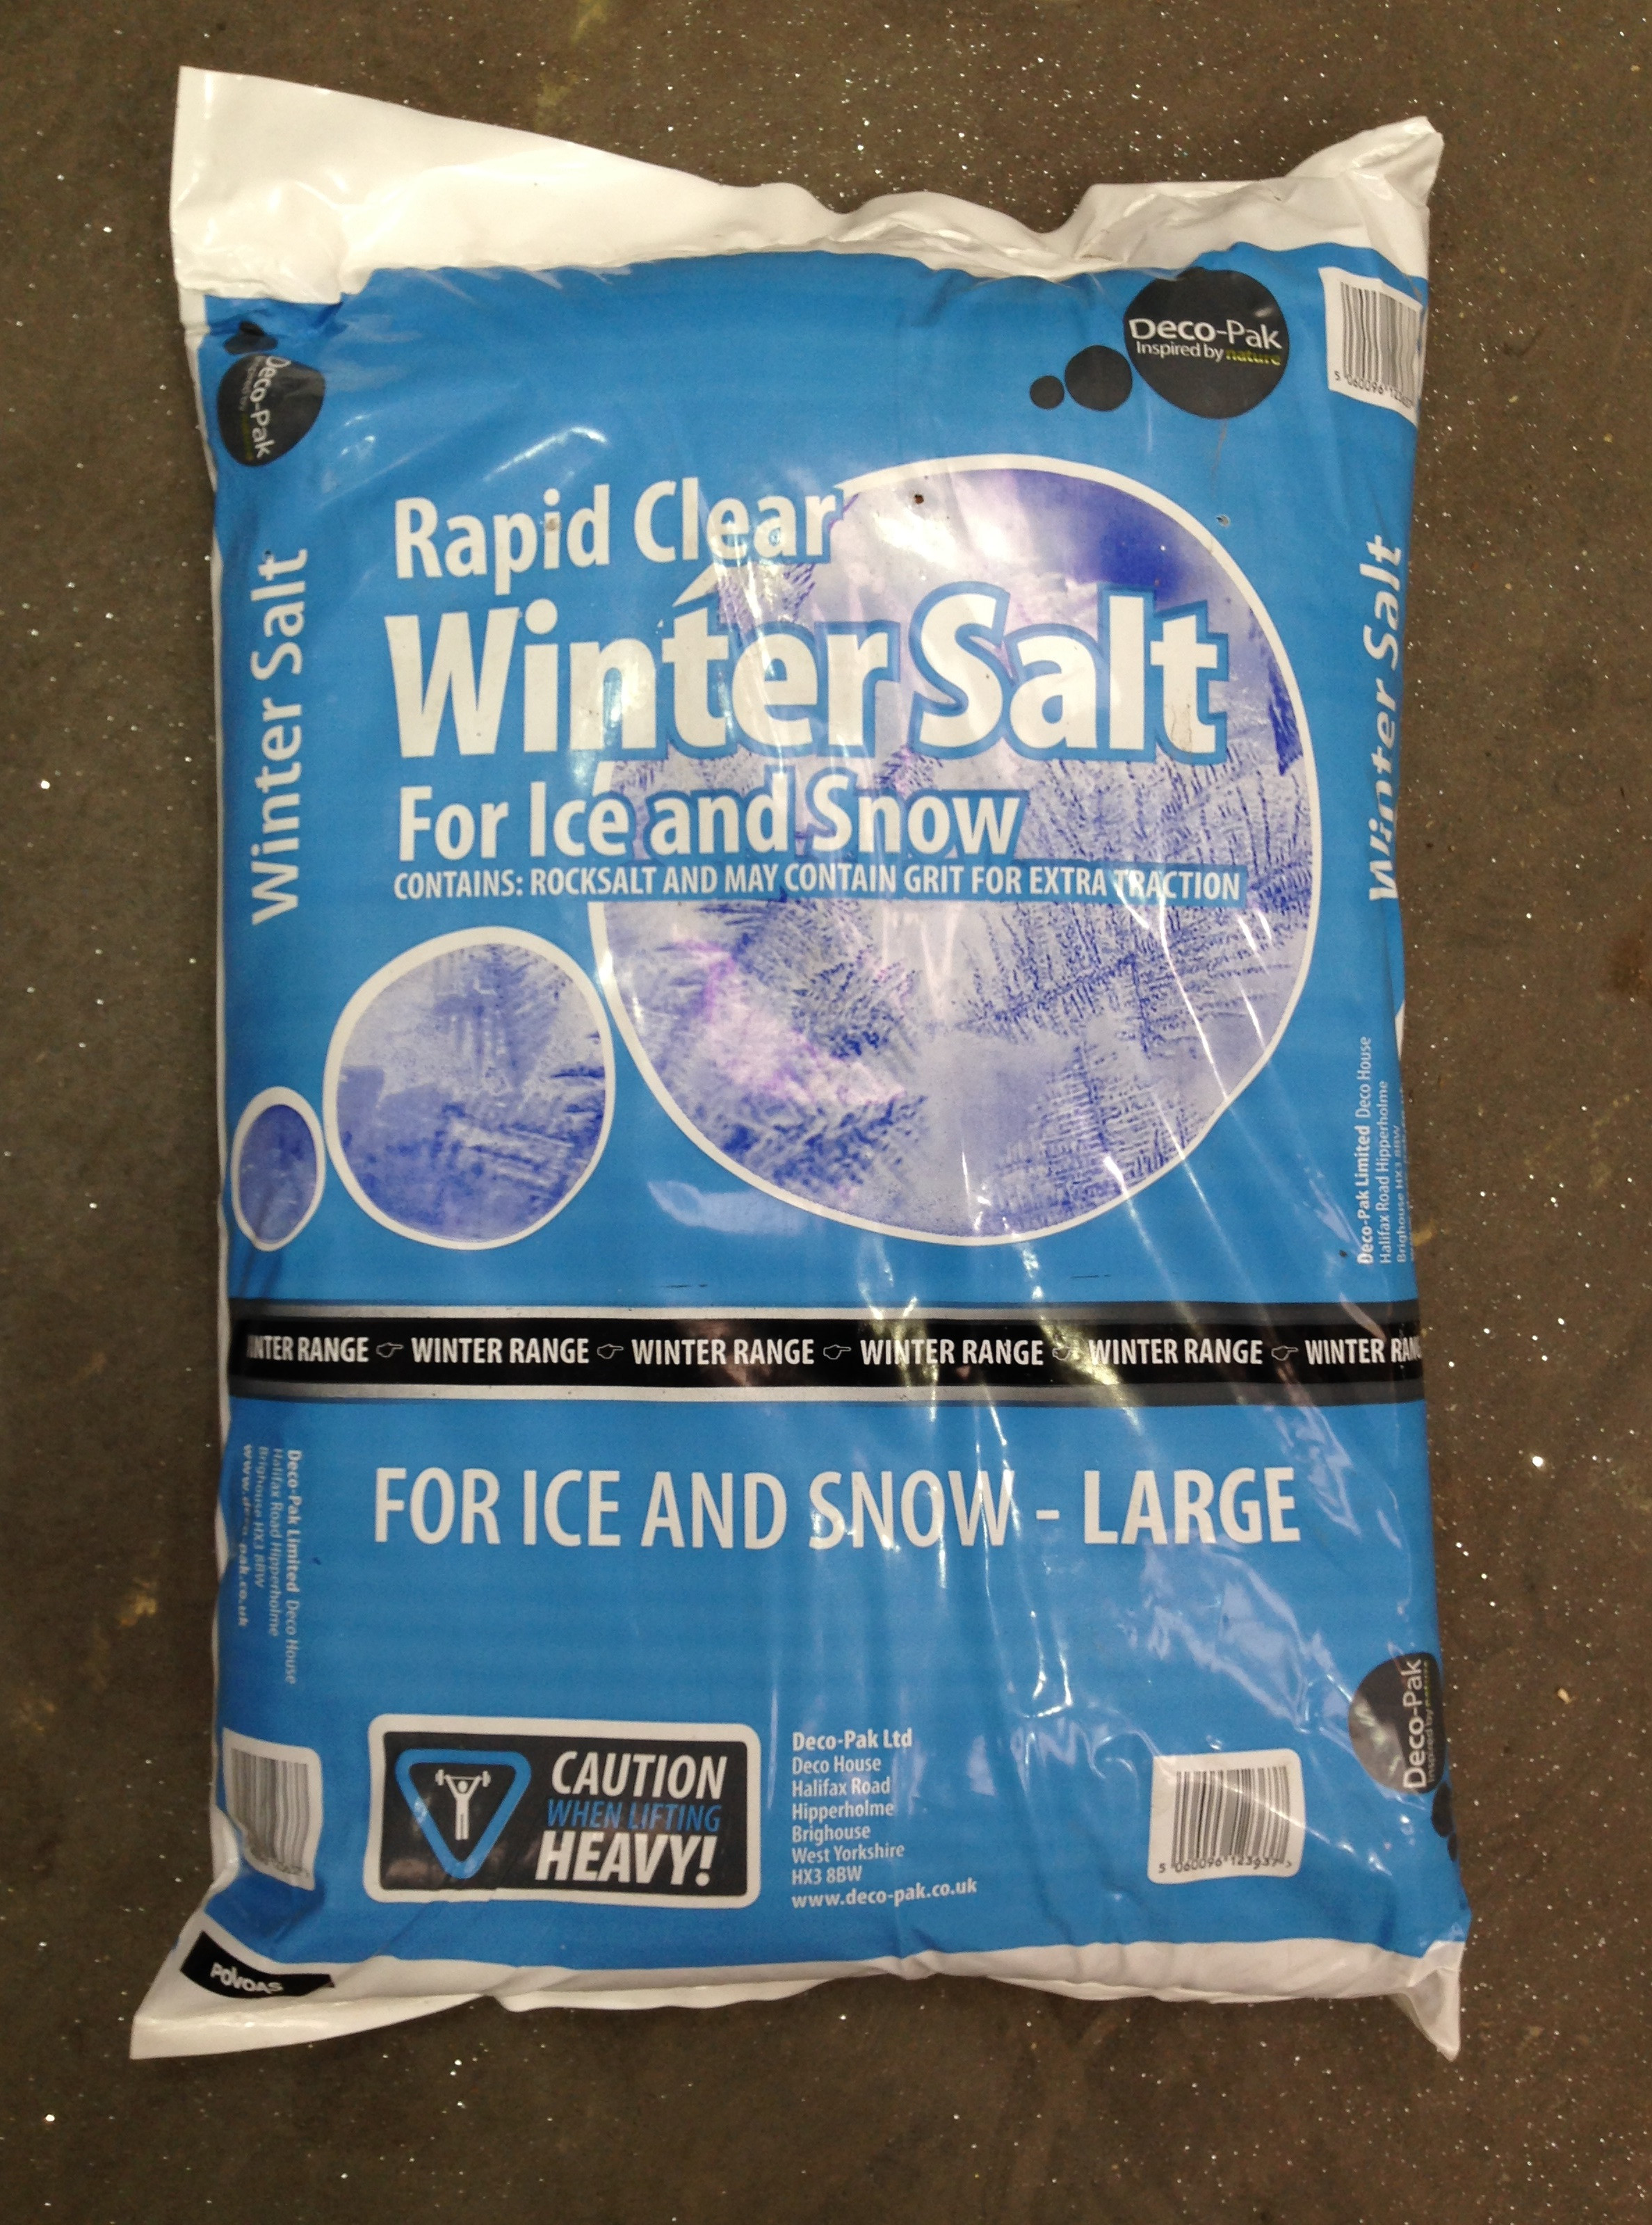 Winter Salt